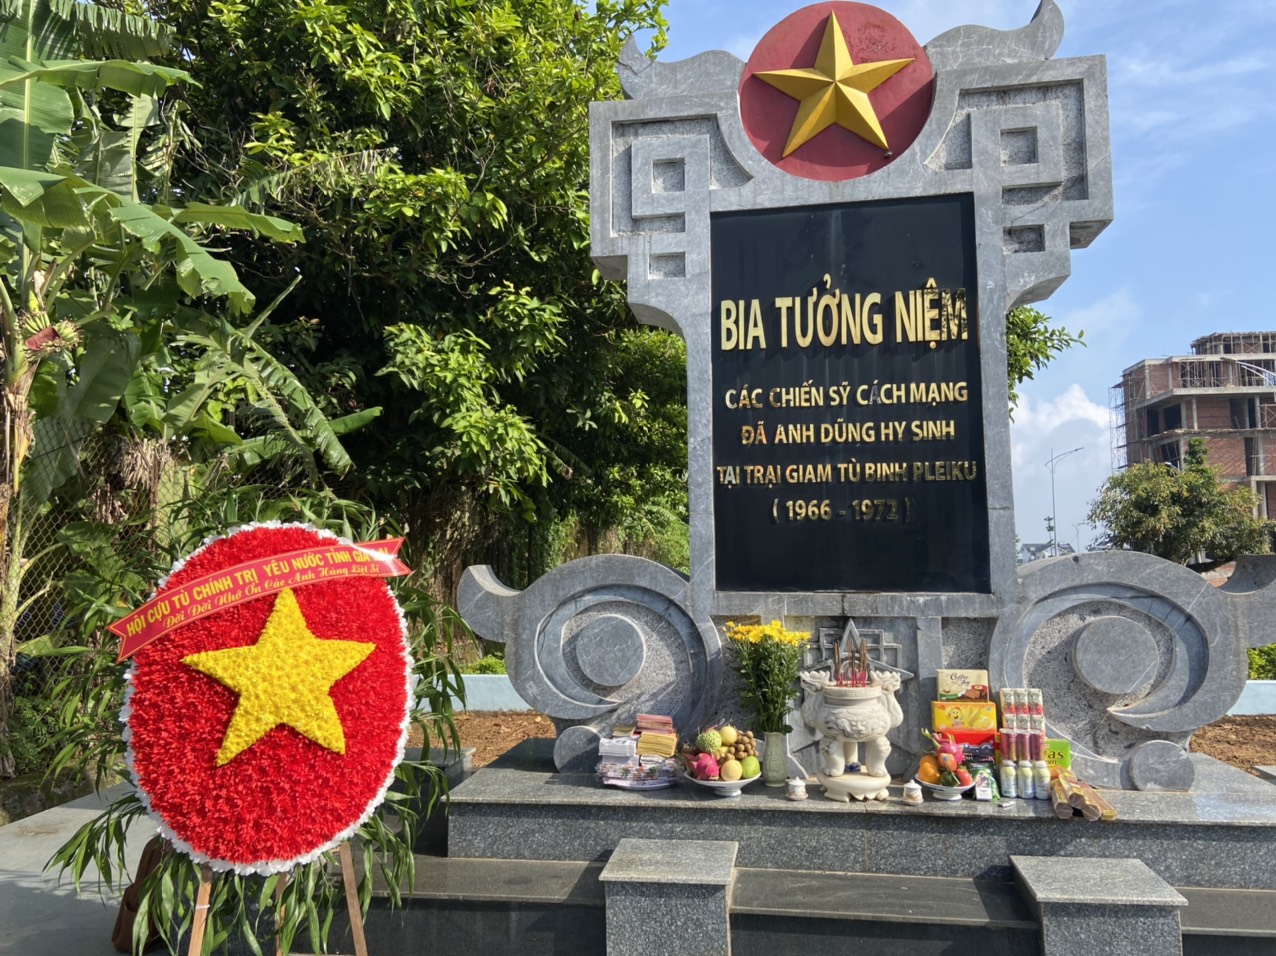 Di tích Bia tưởng niệm các chiến sĩ cách mạng hi sinh  tại Trại giam tù binh Pleiku